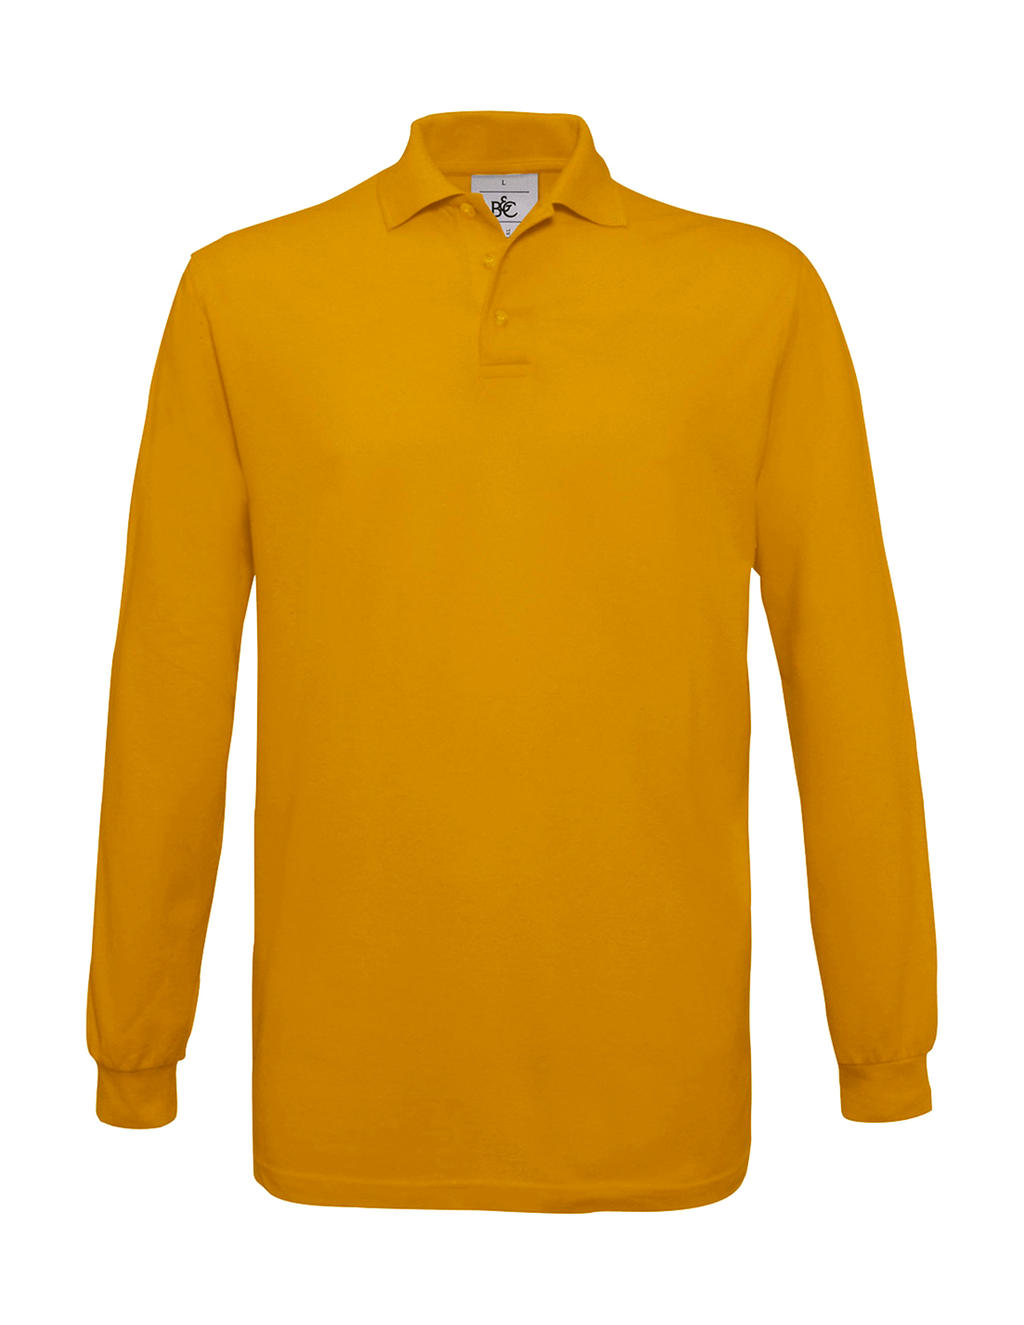 Pánské polo tričko B&C Safran s dlouhým rukávem - žluté, S